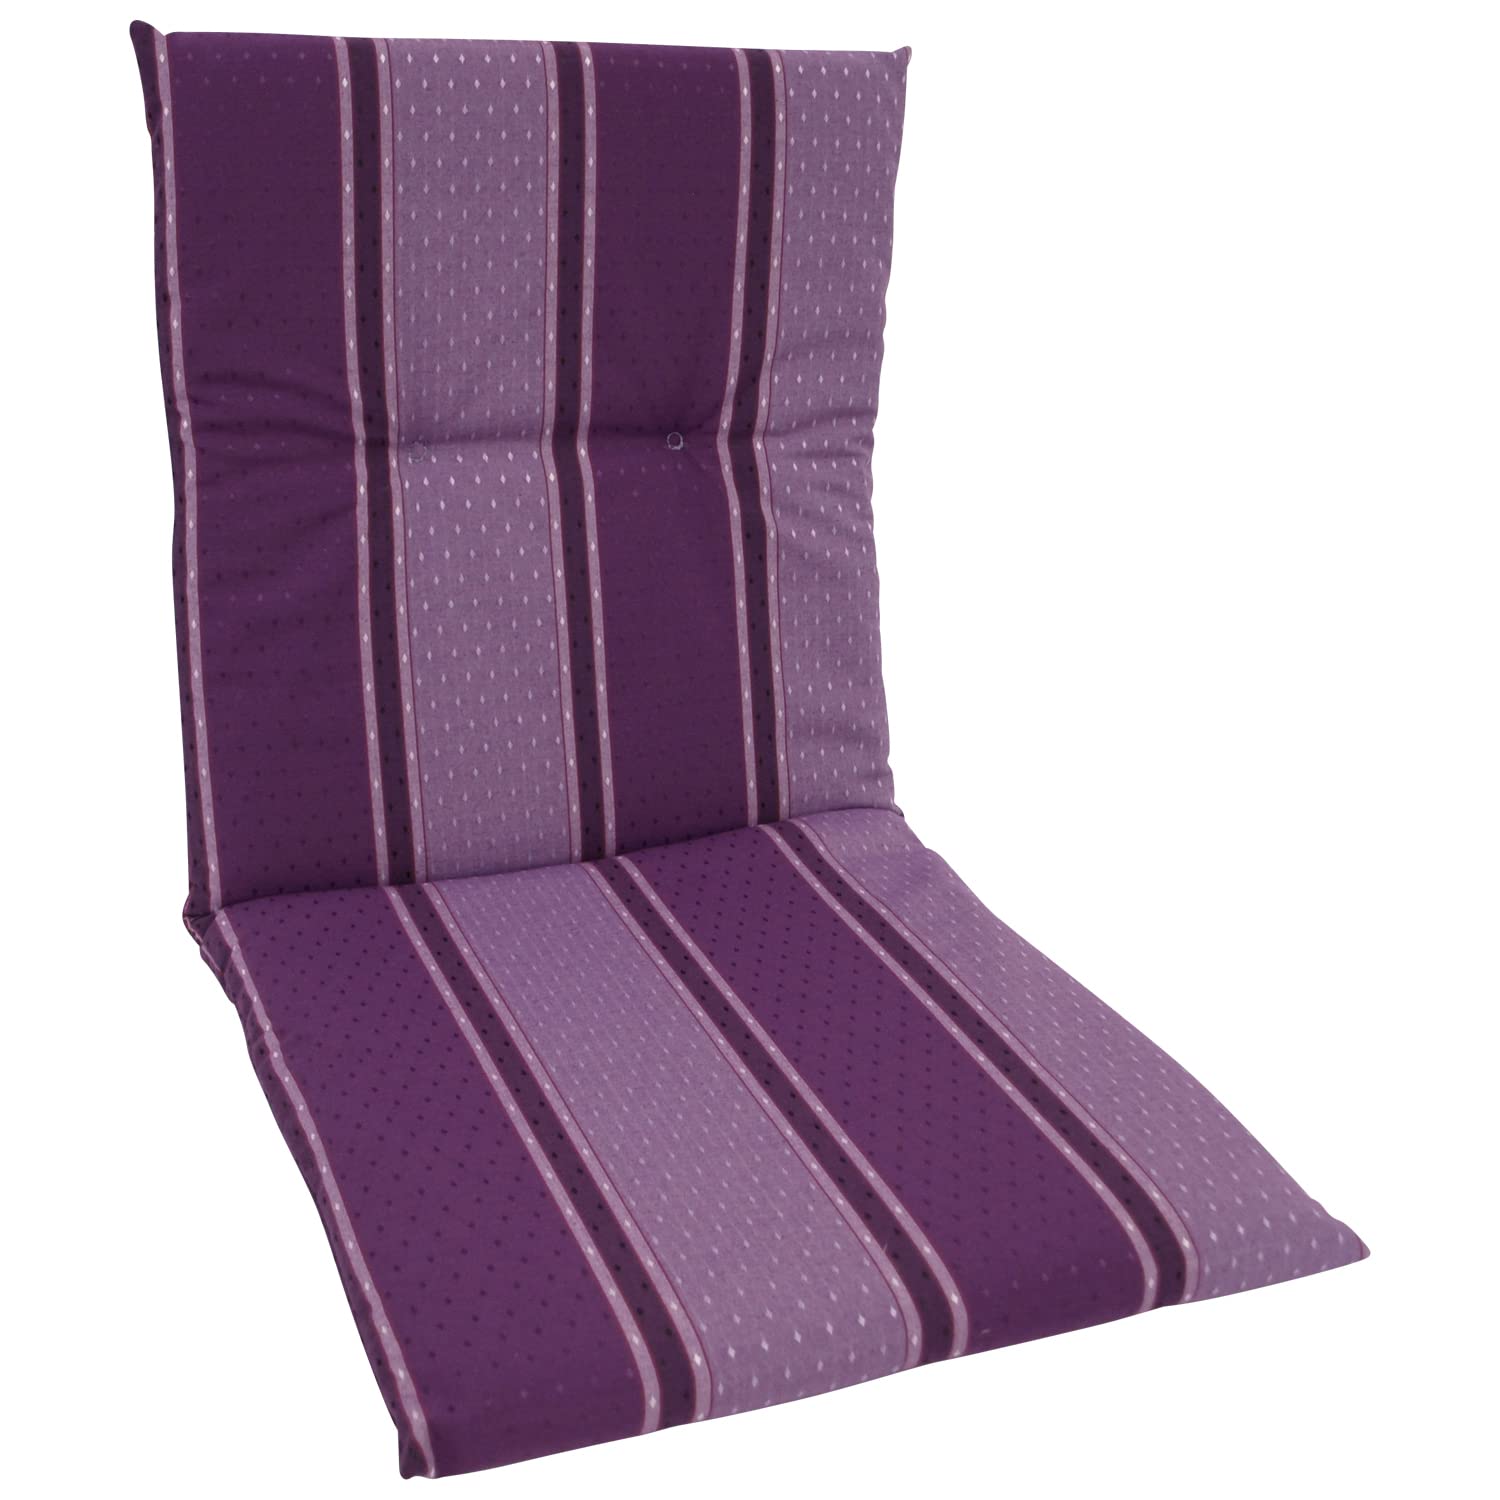 DEGAMO Auflage Sesselauflage Bern für Gartenstuhl Niederlehner, 48x98cm, violett gestreift, Outdoor